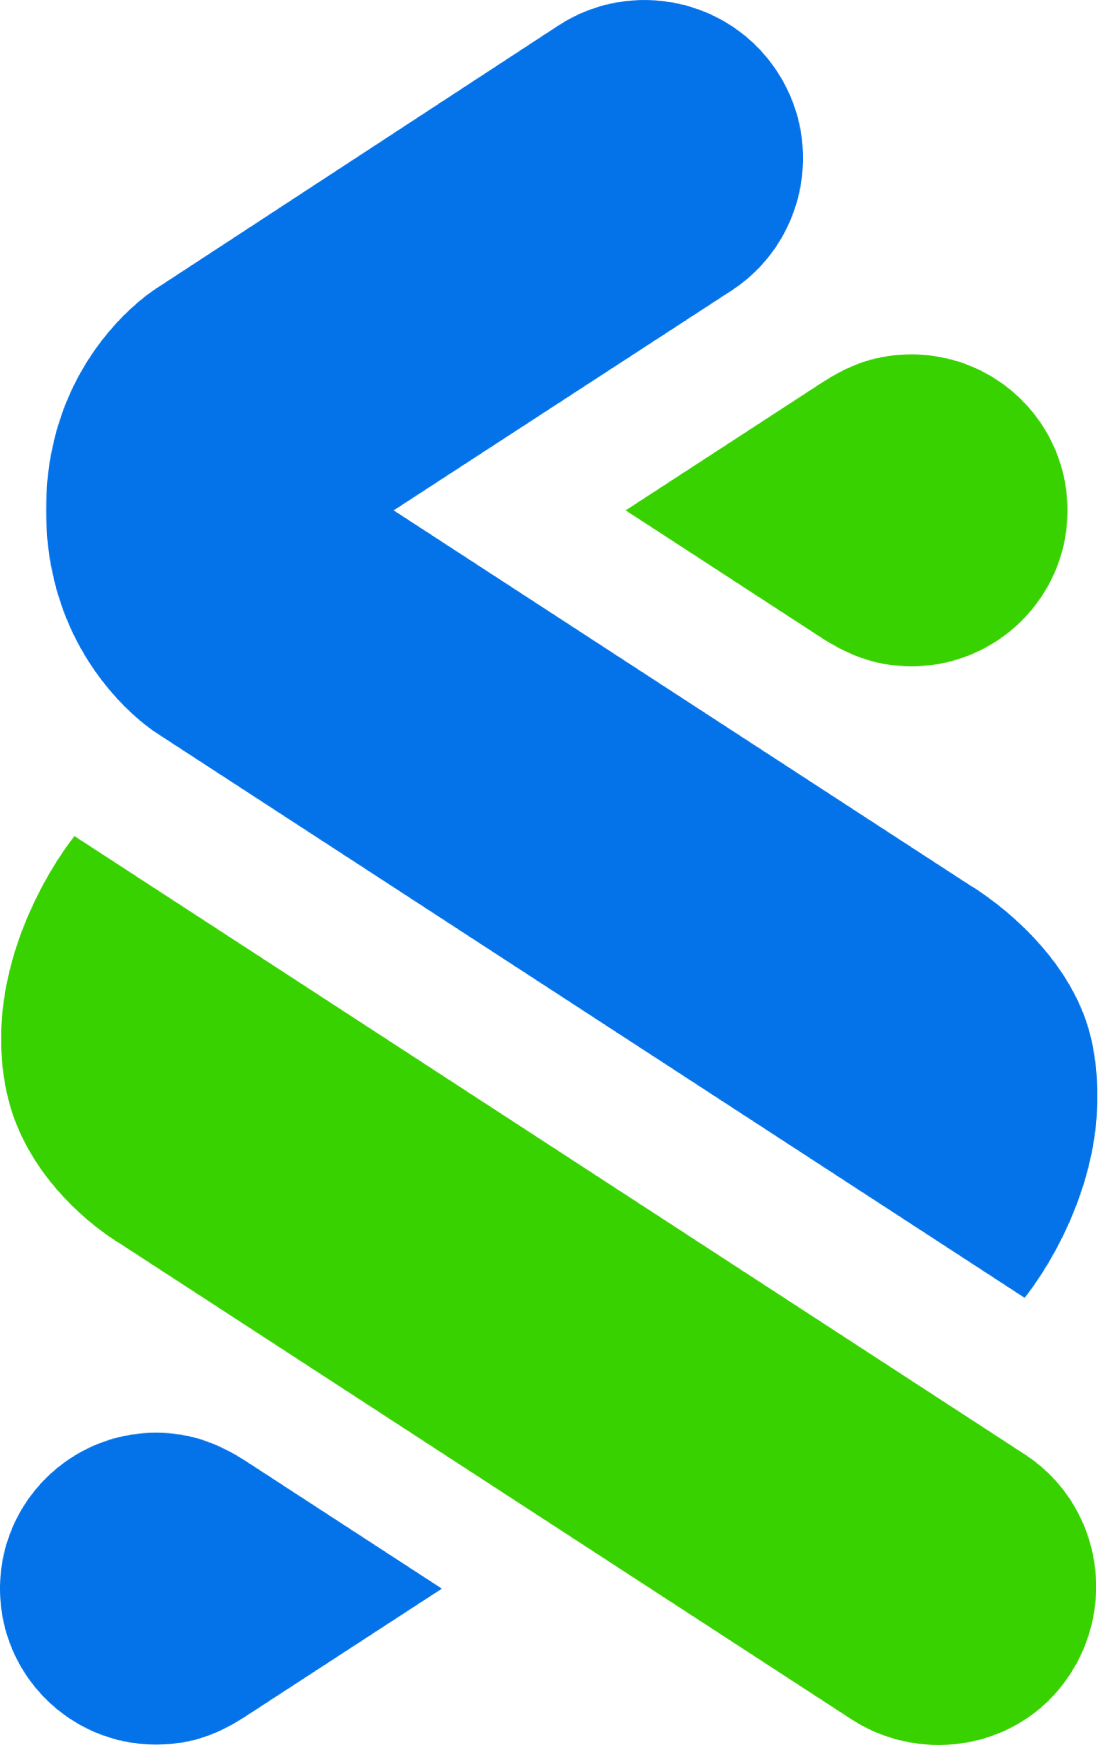 Standard Chartered logo (transparent PNG)